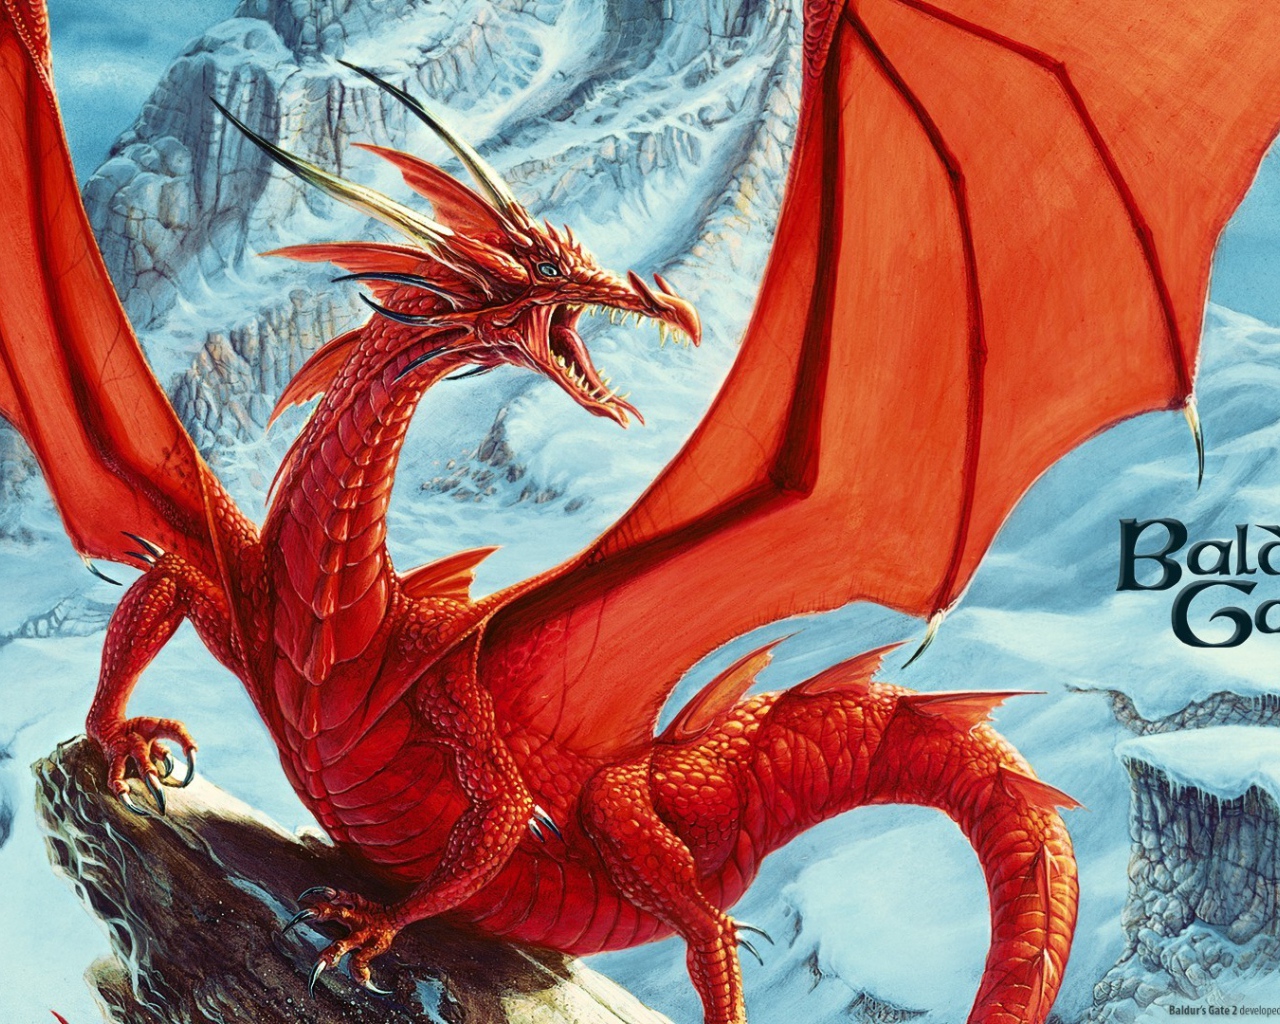 Красный дракон в игре Baldur's Gate